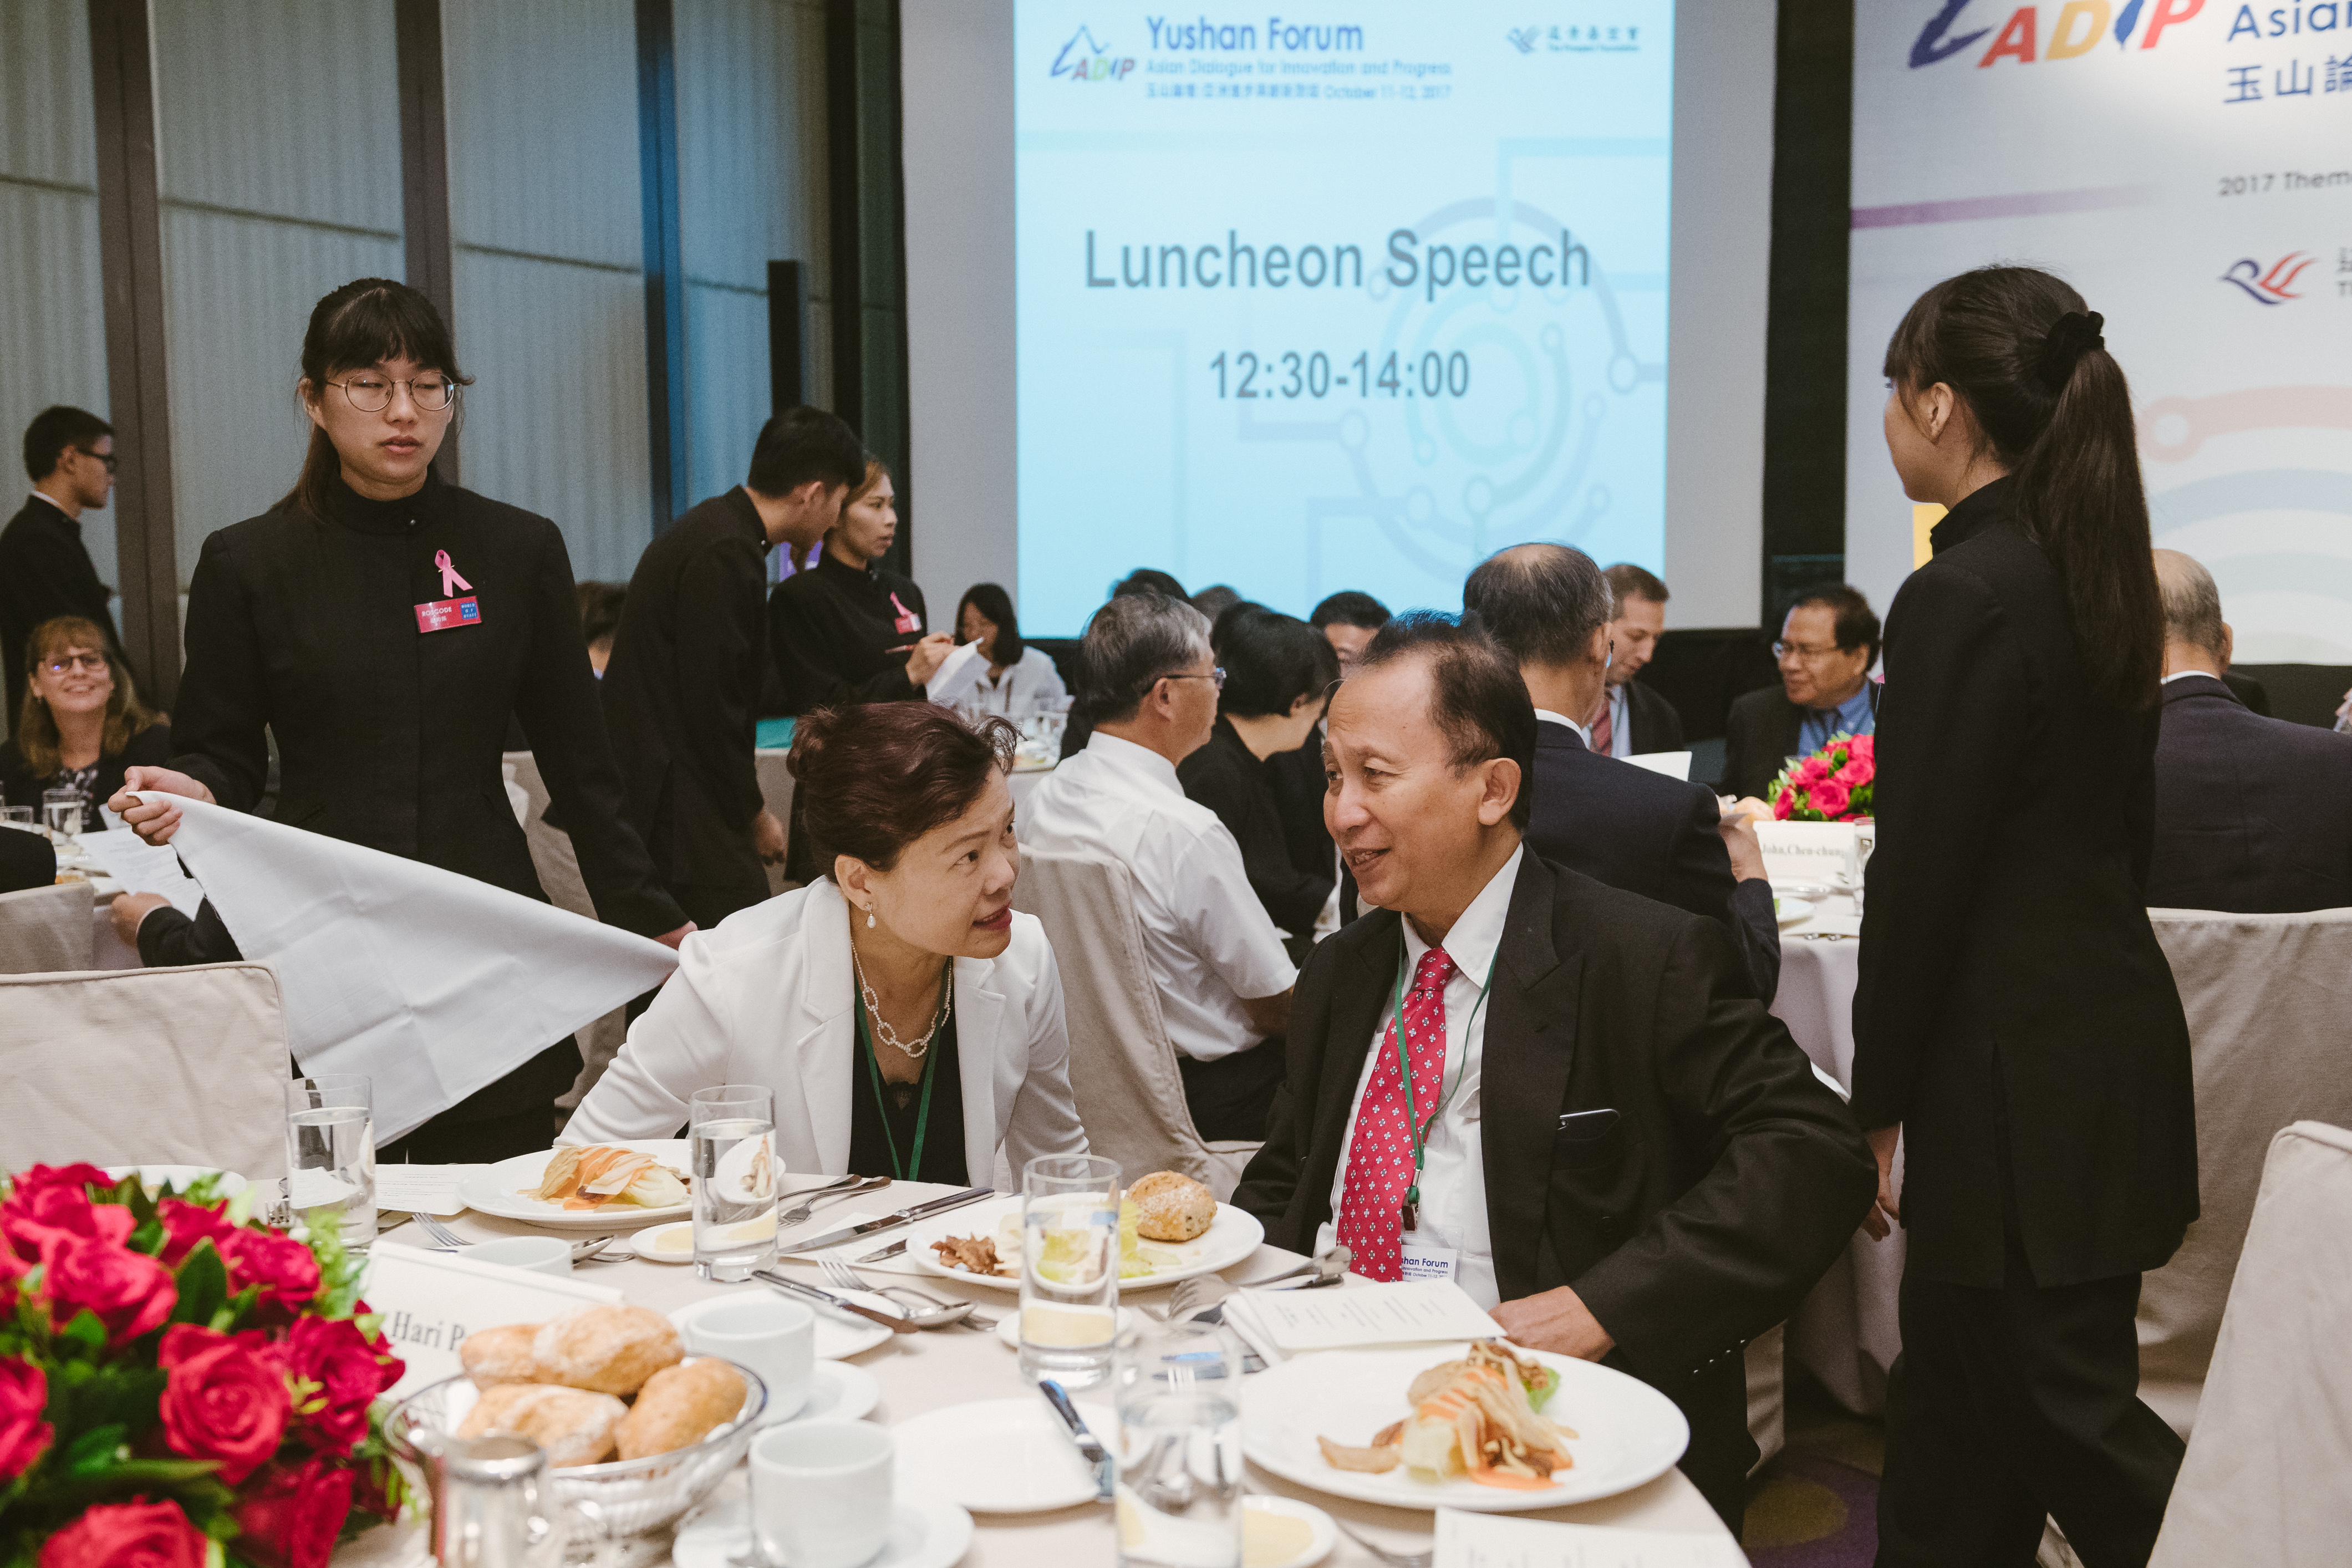 Luncheon Speech